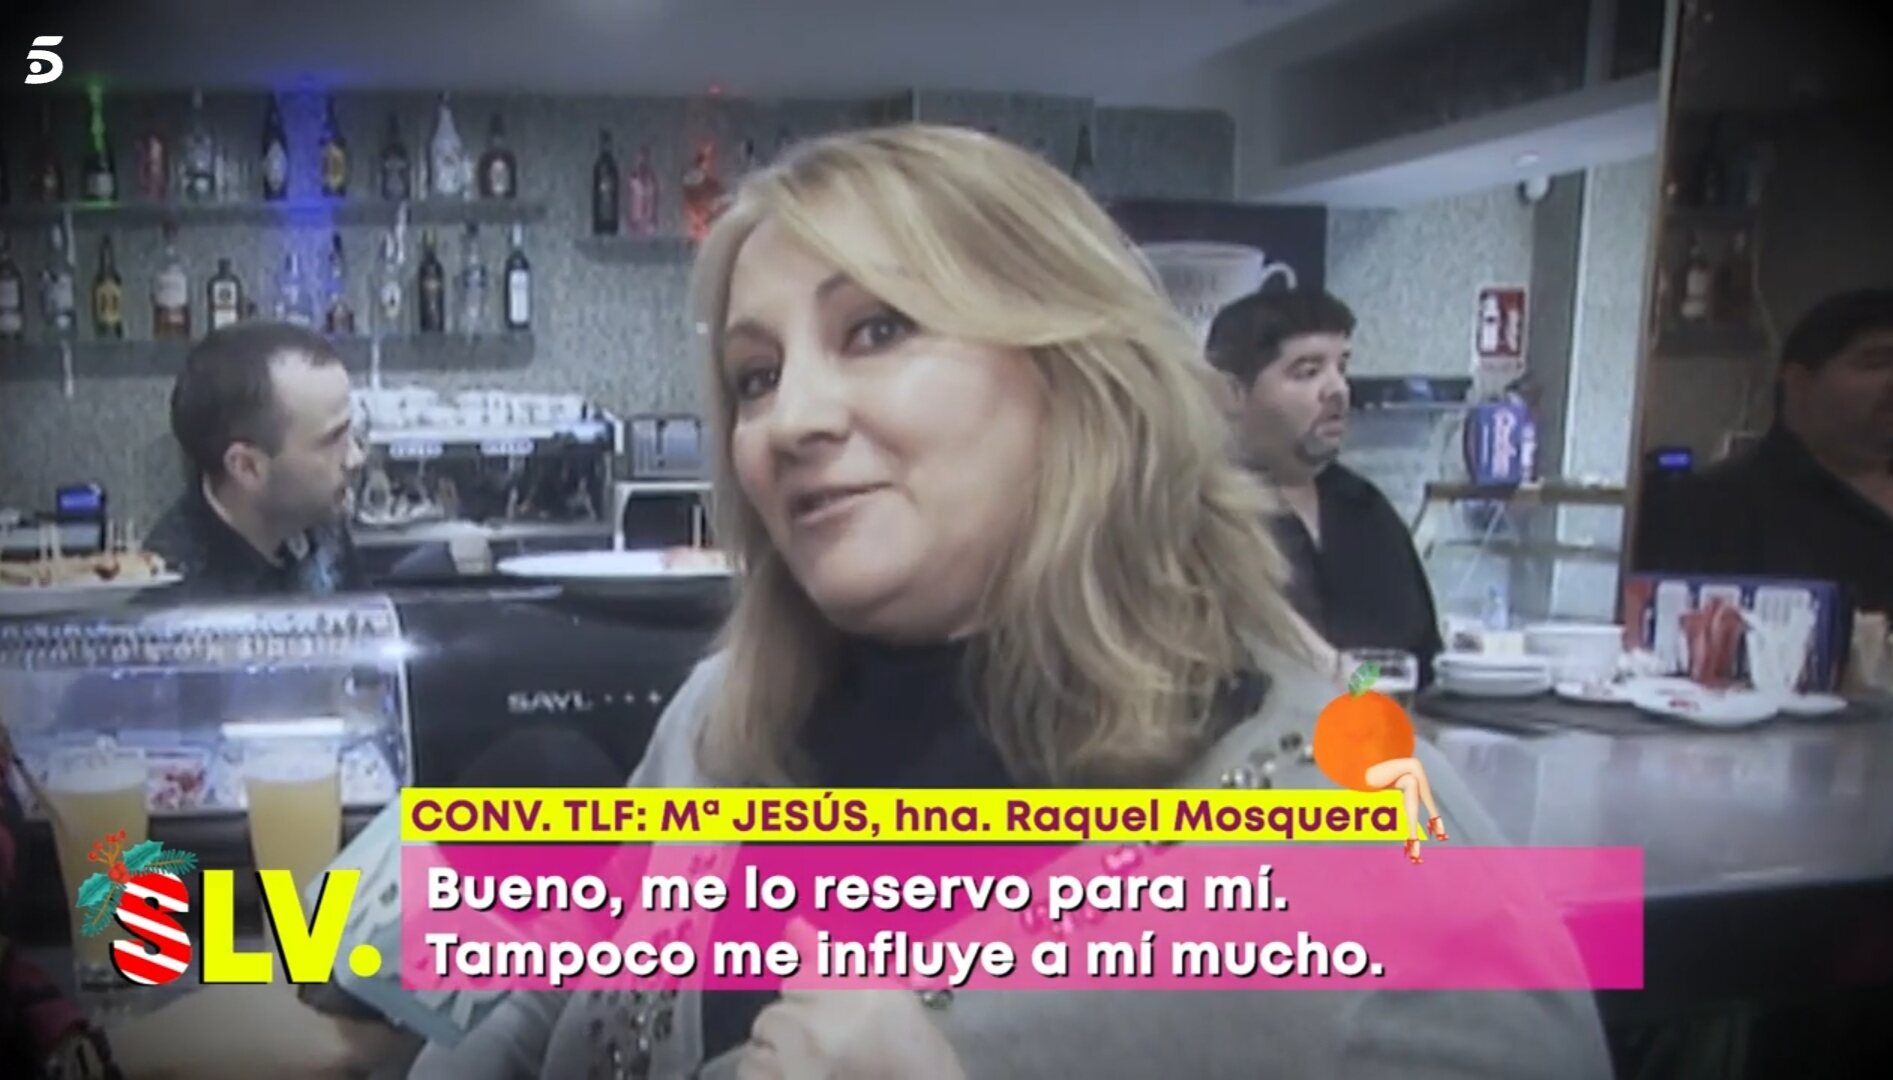 La hermana de Raquel Mosquera reacciona a la noticia / Foto: Telecinco.es